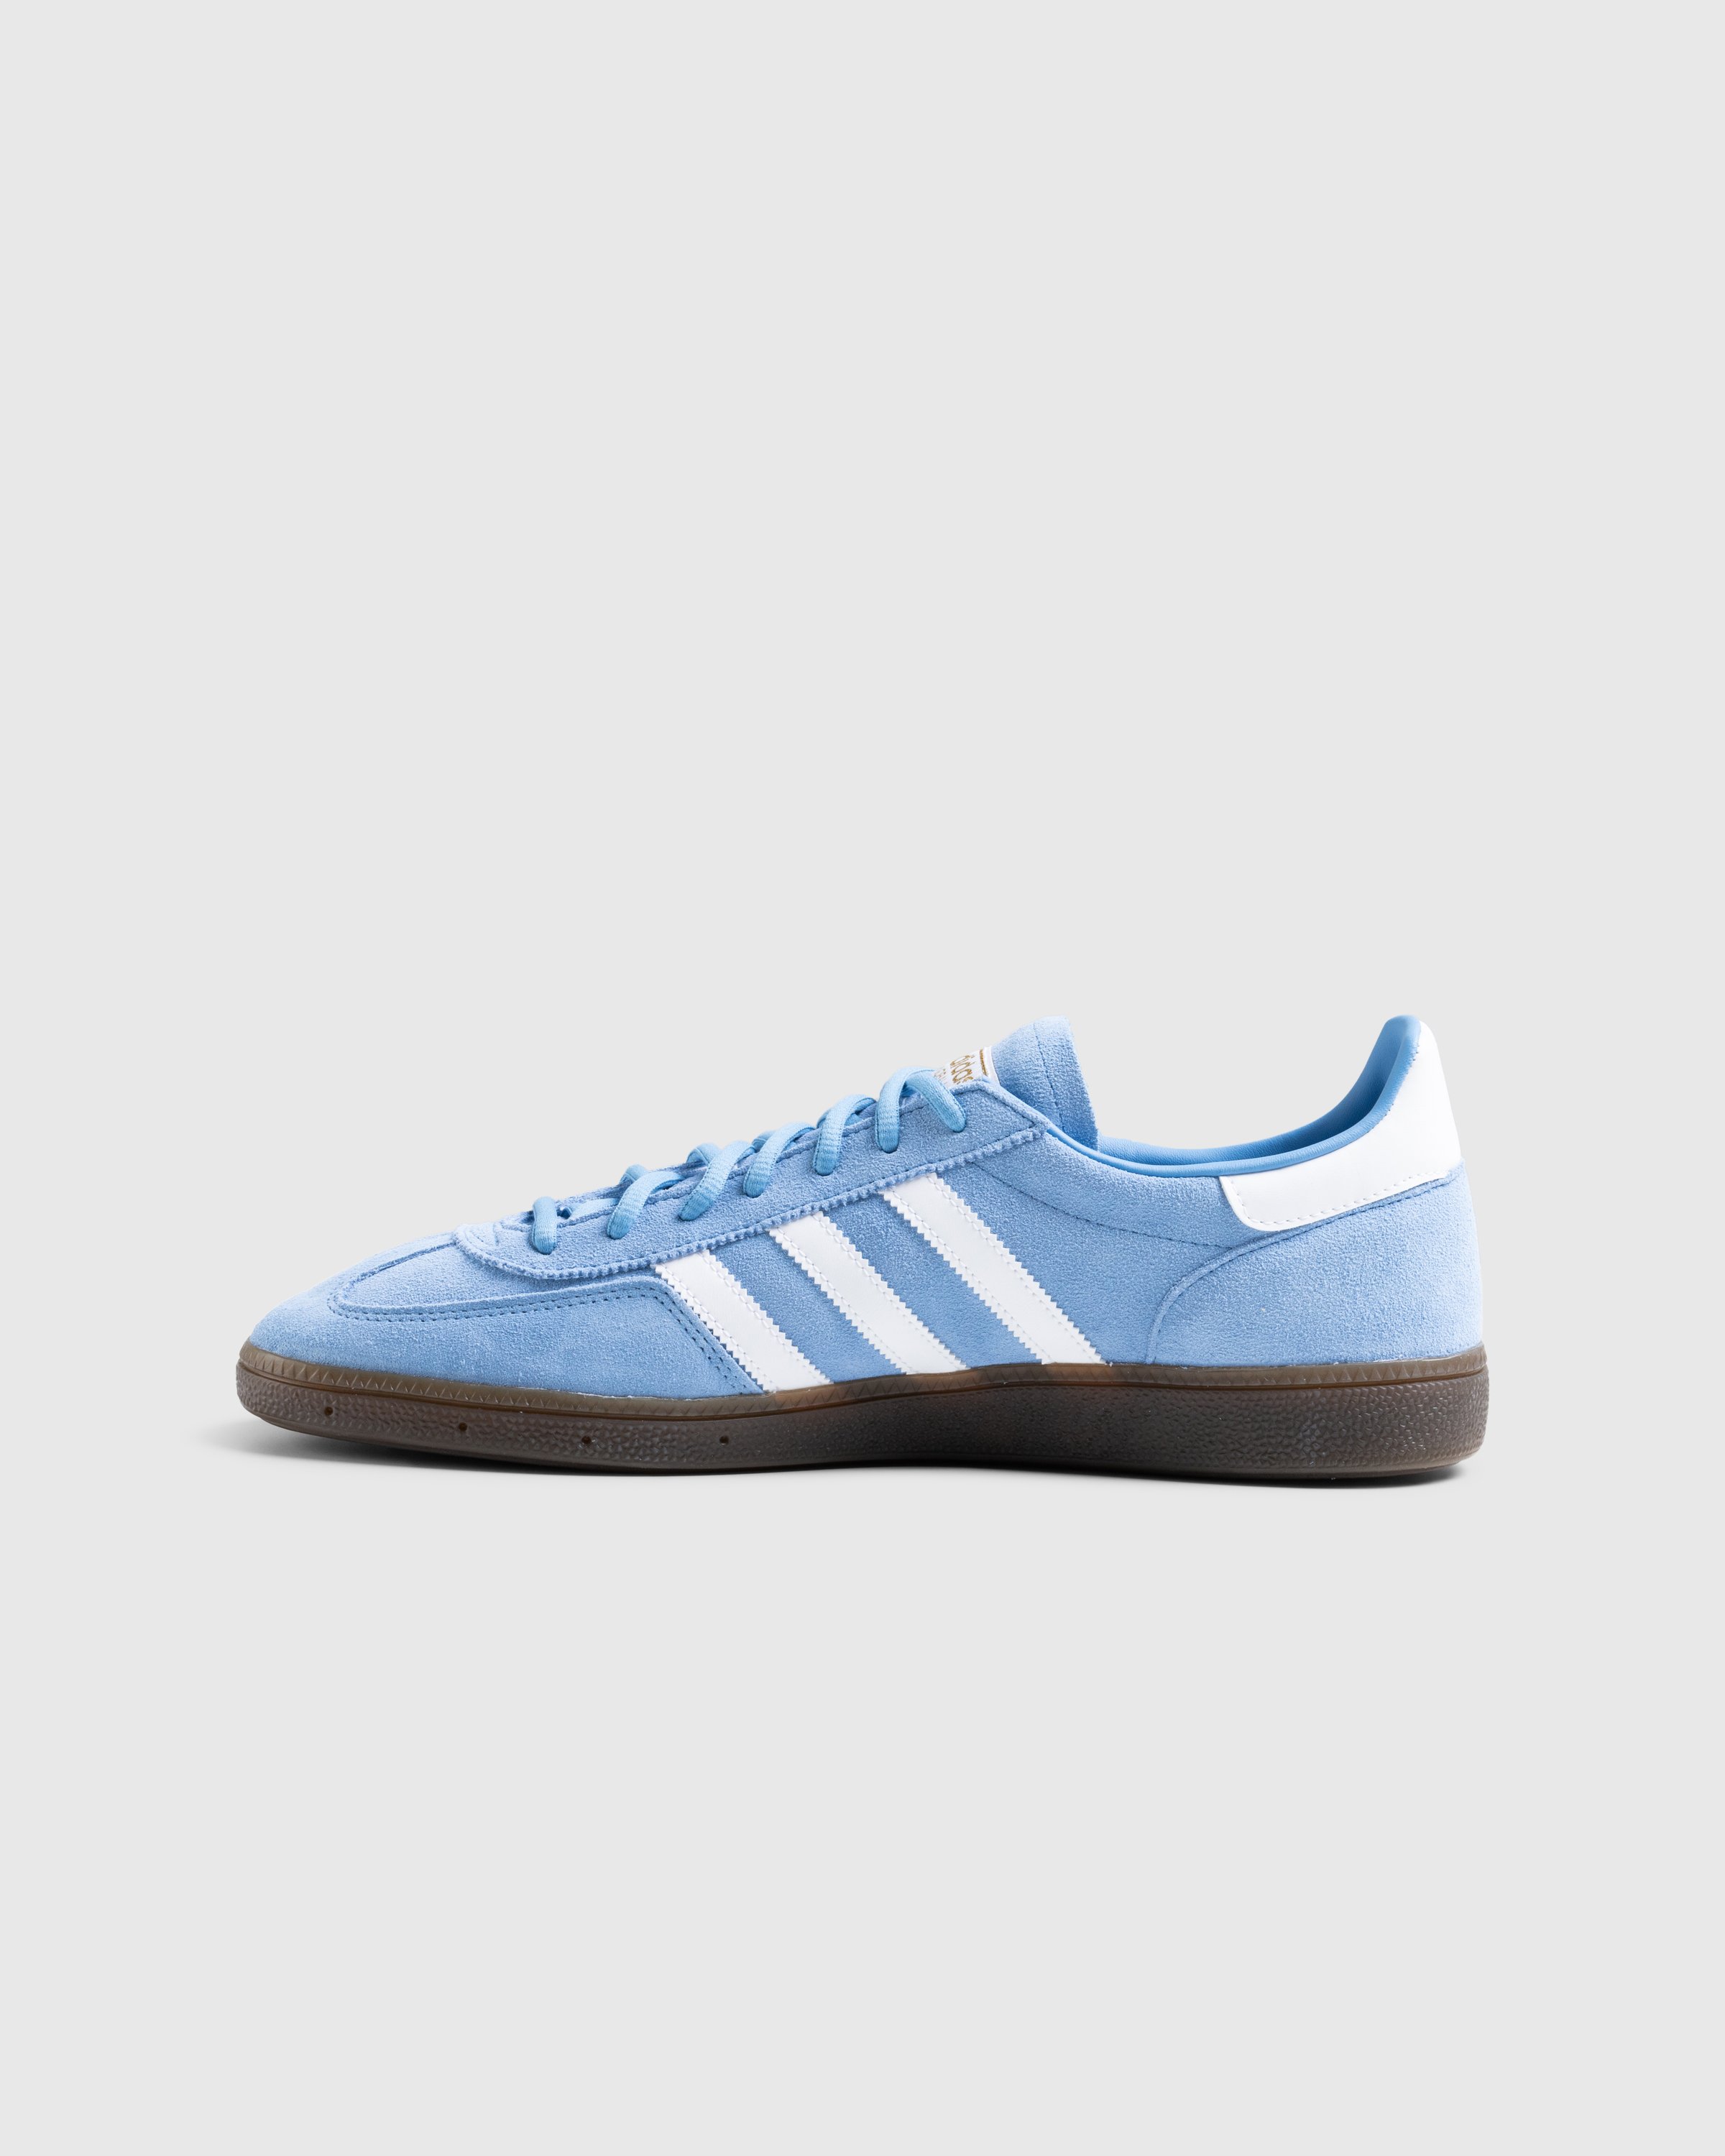 Adidas - Handball Spezial    Ltblue/Ftwwht/Gum5 - Footwear - Blue - Image 2